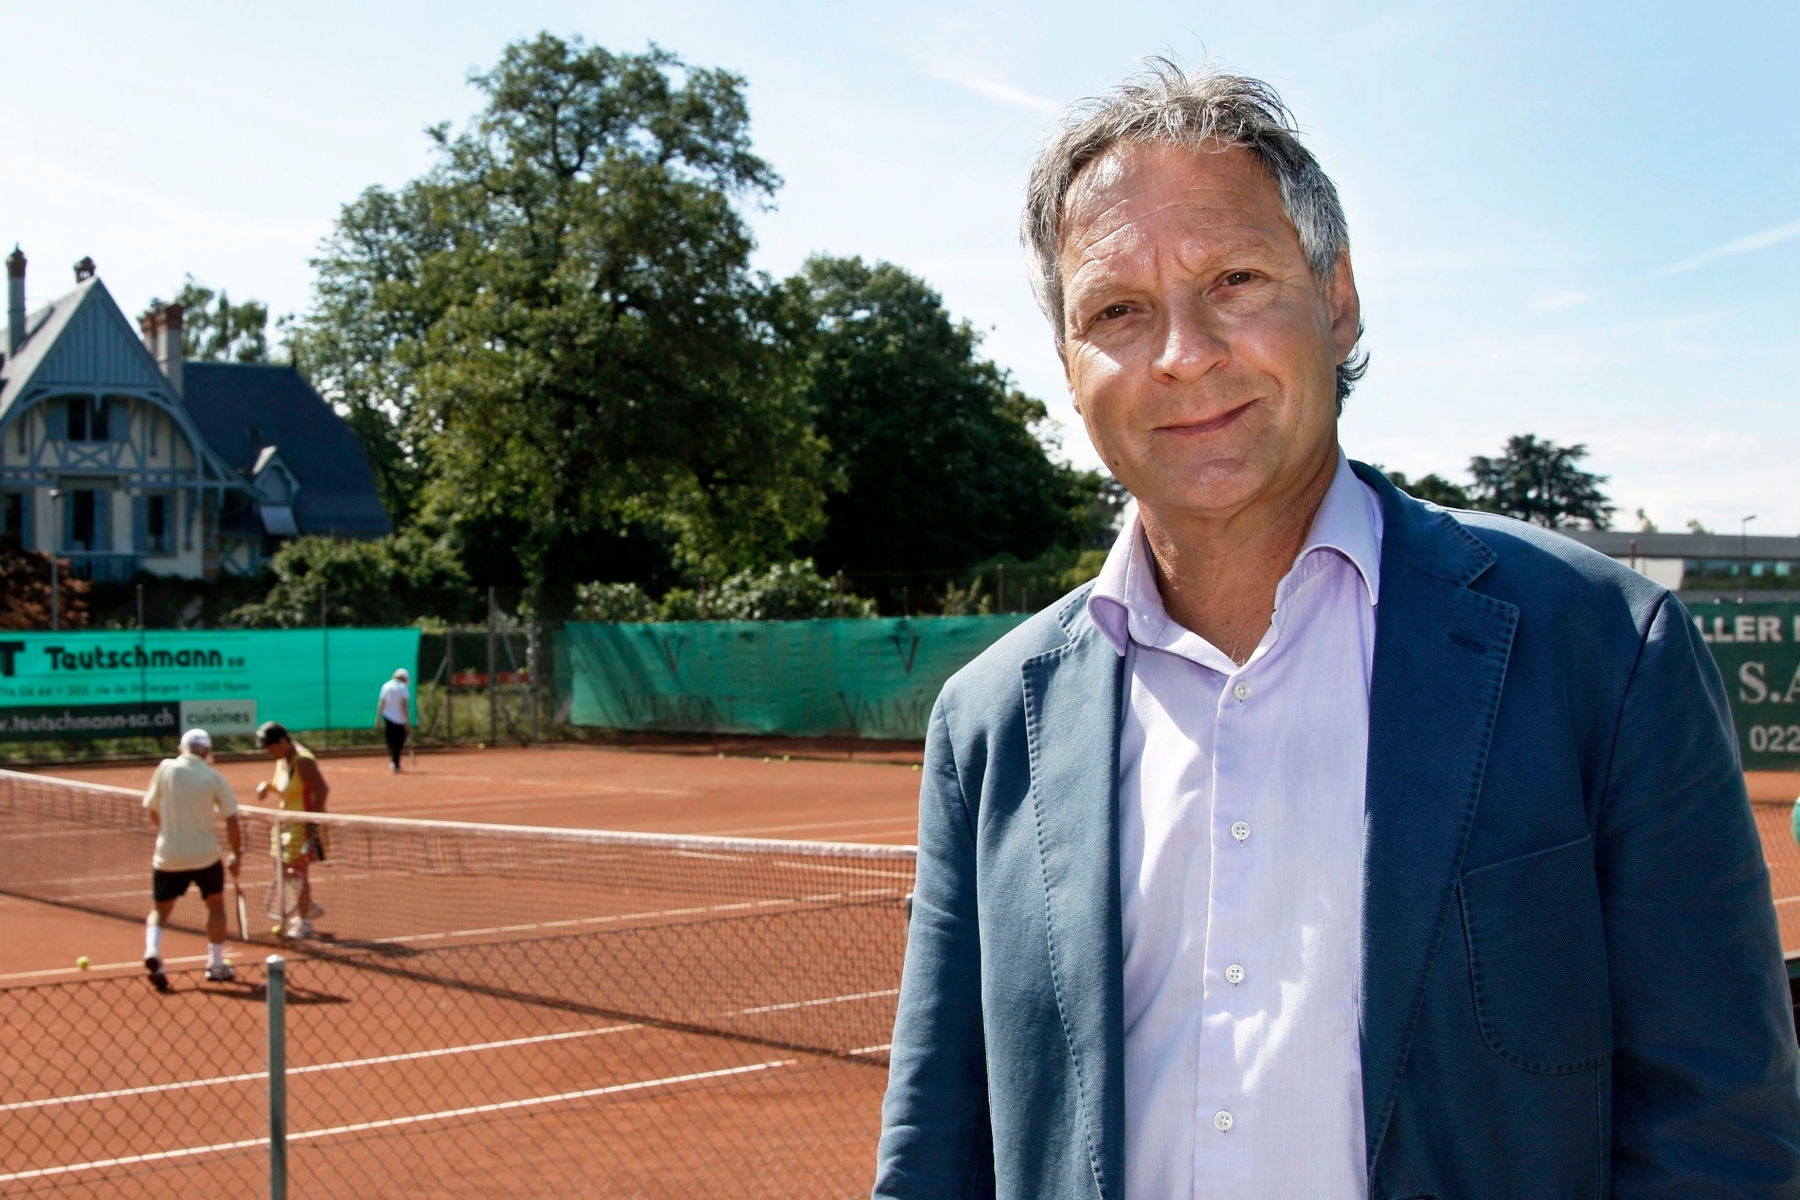 Nyon, Tennis Club, Vendredi 19 juin 2015, Pierre-Alain Dupuis, Photos Céline Reuille